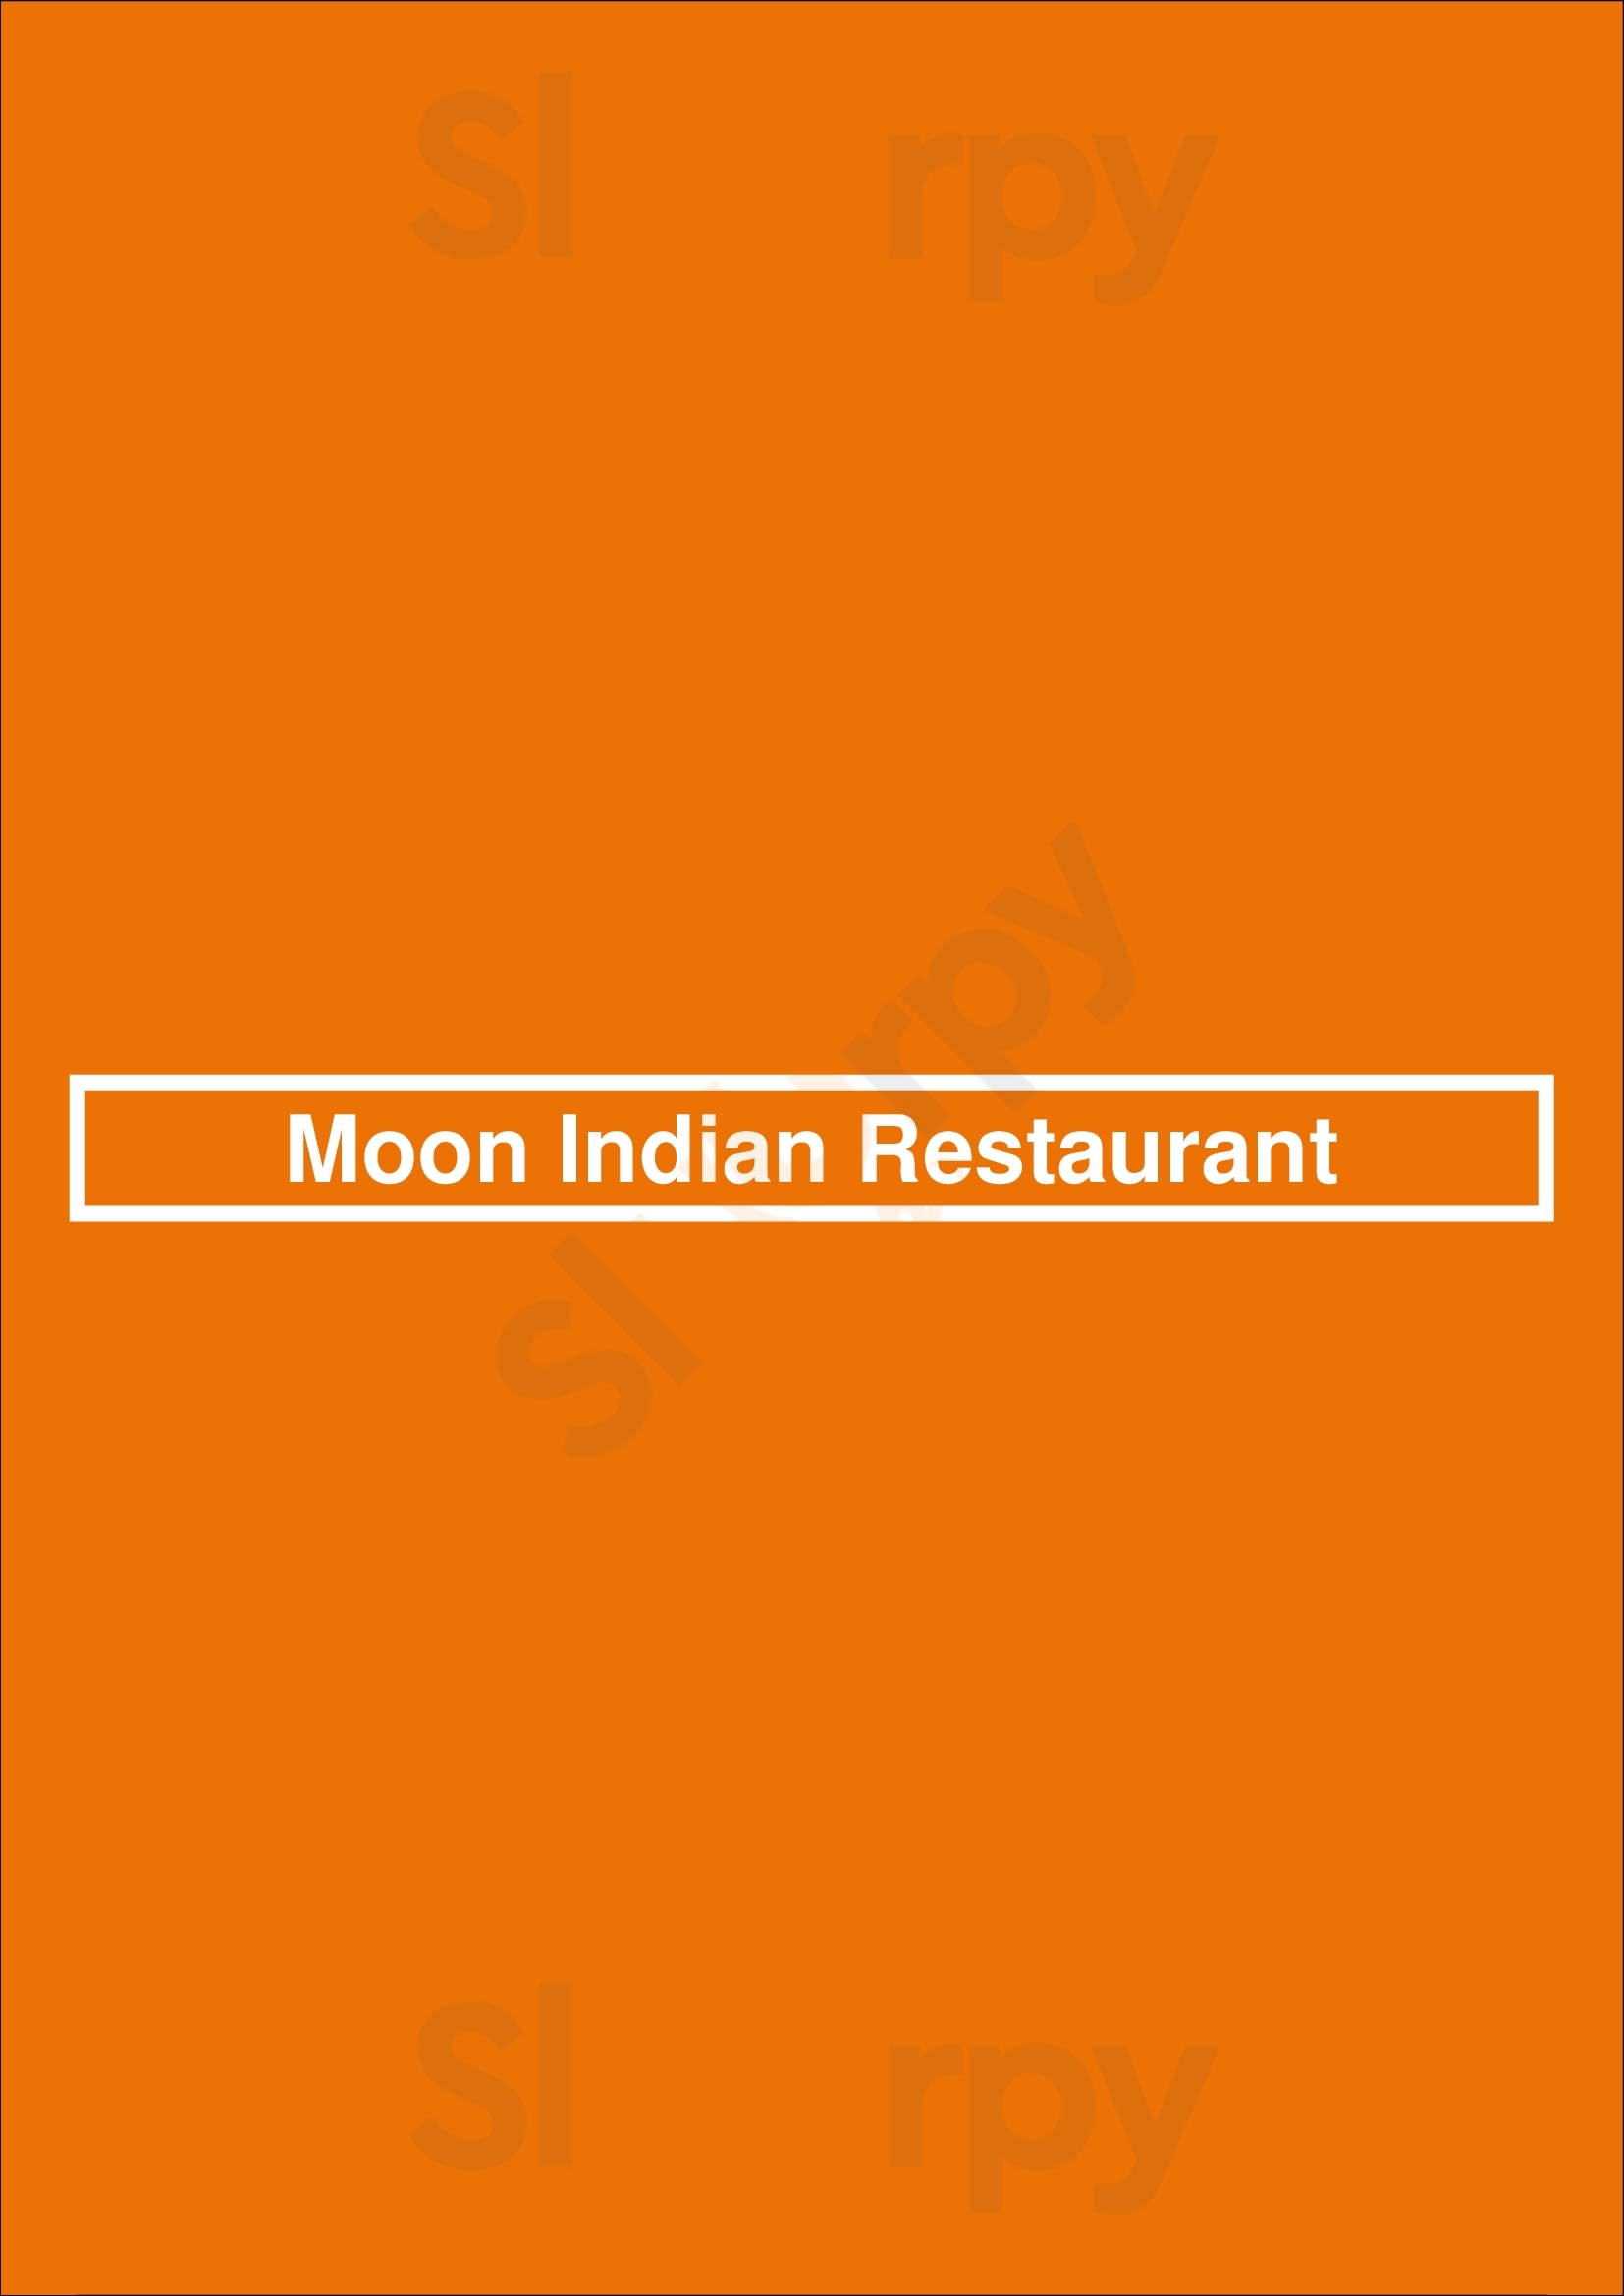 Moon Indian Restaurant Hayward Menu - 1